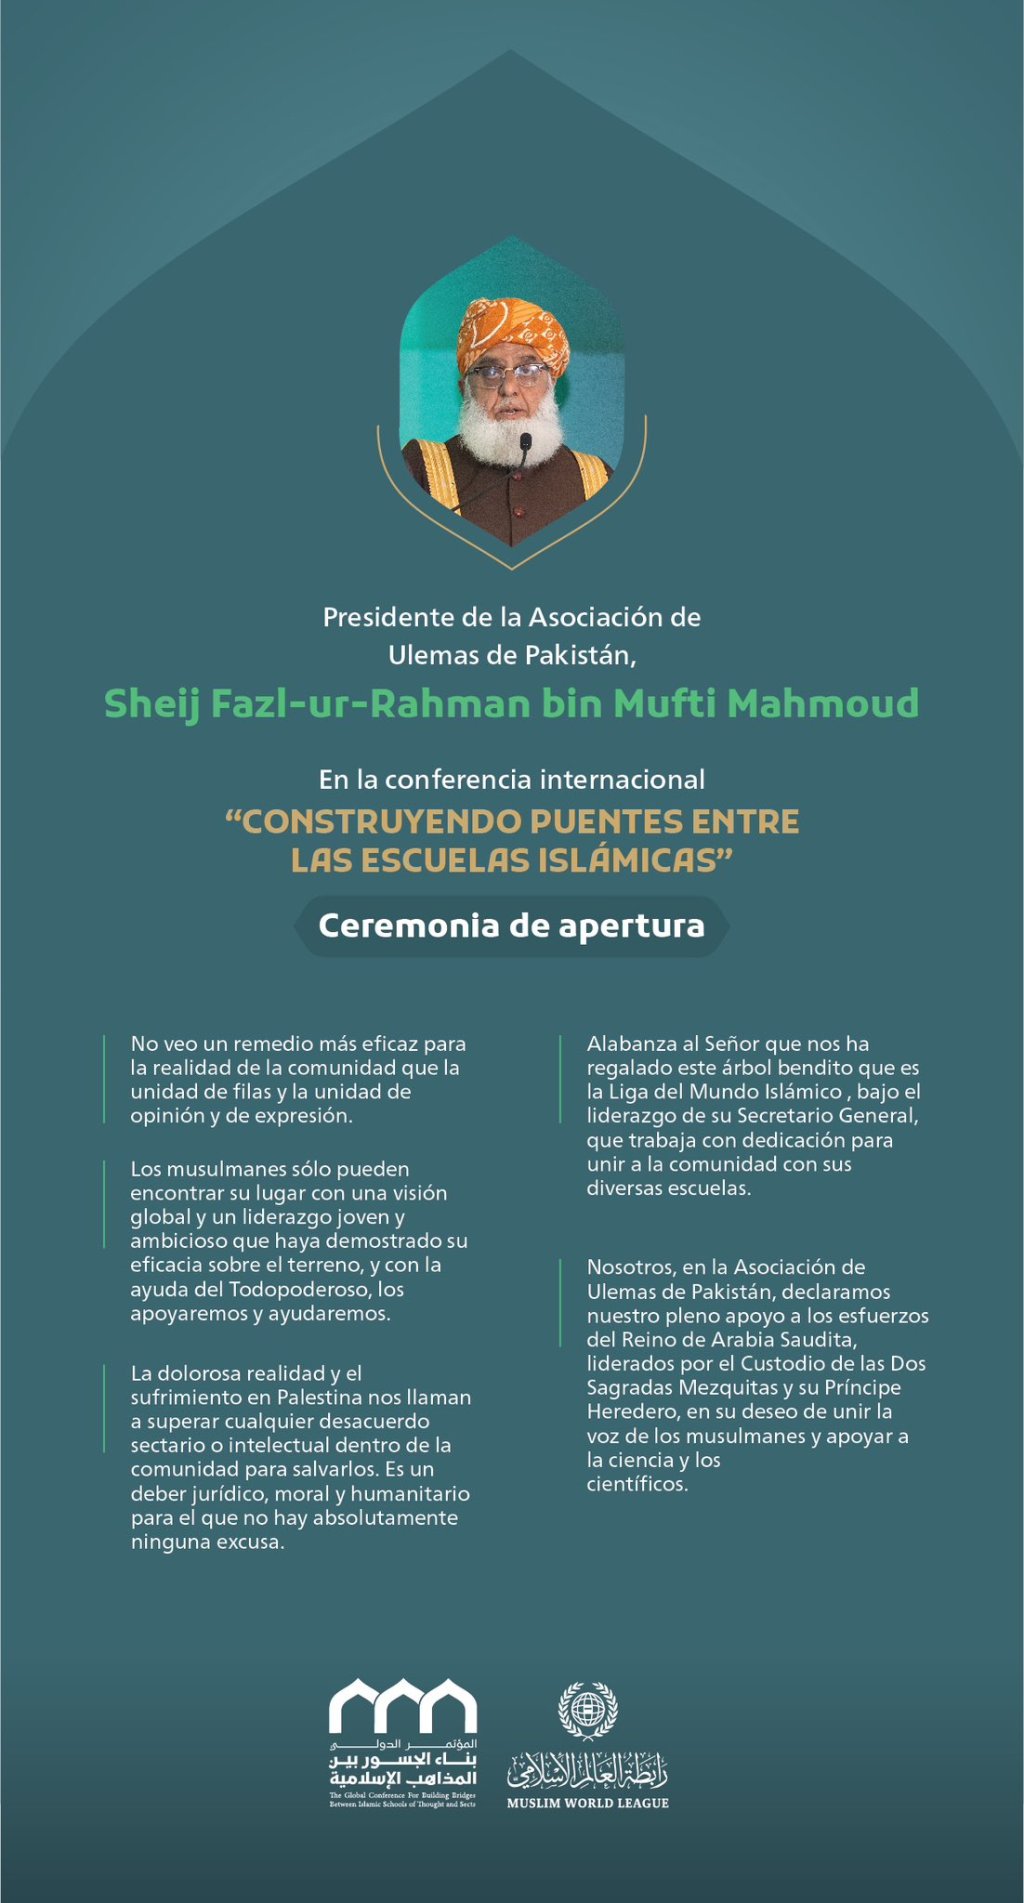 Extractos del discurso del Presidente de la Asociación de Ulemas de Pakistán, el Sheij Fazl-ur-Rahman bin Mufti Mahmoud, en la conferencia internacional